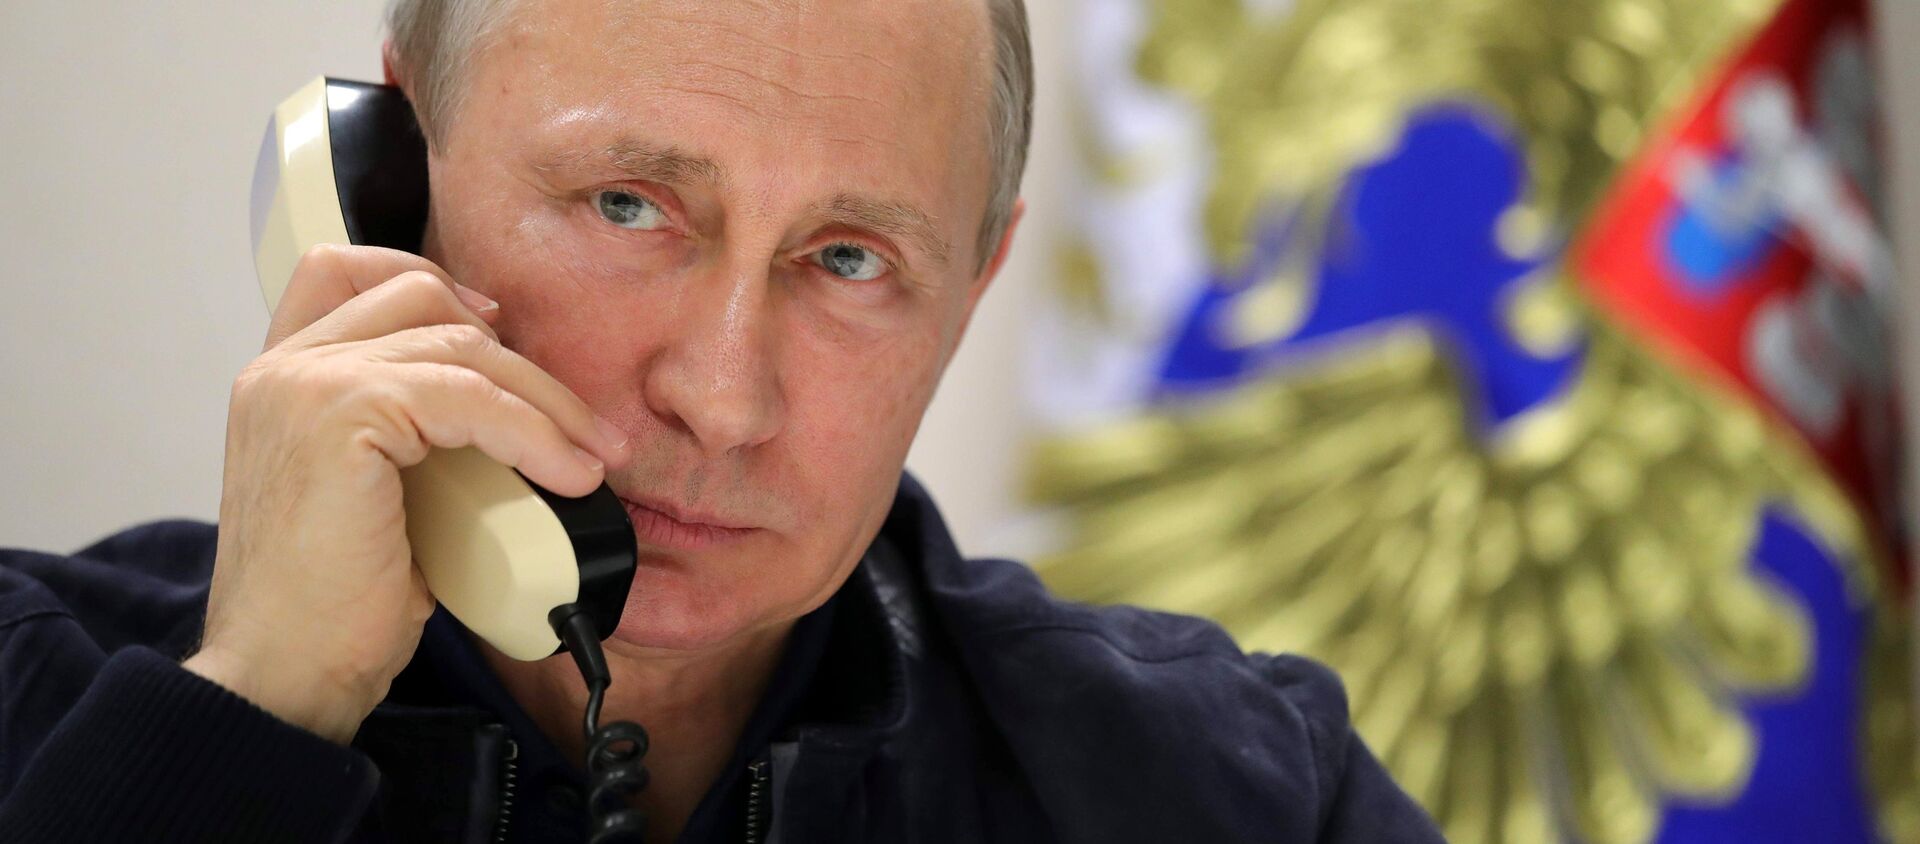 Vladímir Putin, presidente de Rusia, habla por teléfono (archivo) - Sputnik Mundo, 1920, 27.09.2019